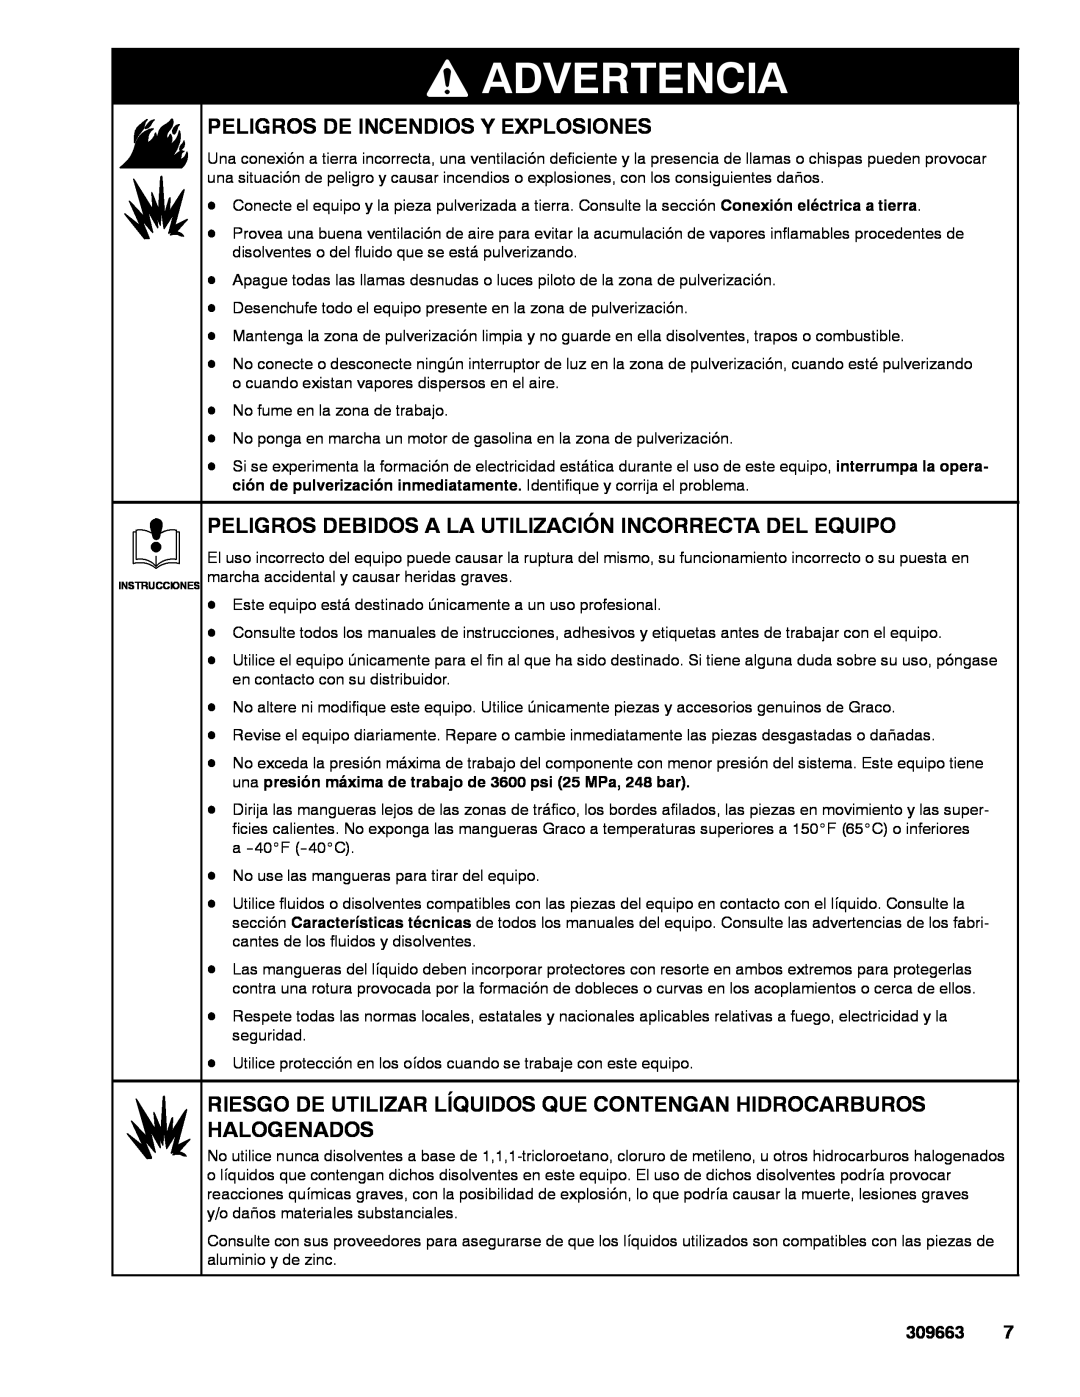 Graco Inc 234113 Peligros De Incendios Y Explosiones, Peligros Debidos A La Utilización Incorrecta Del Equipo, Advertencia 